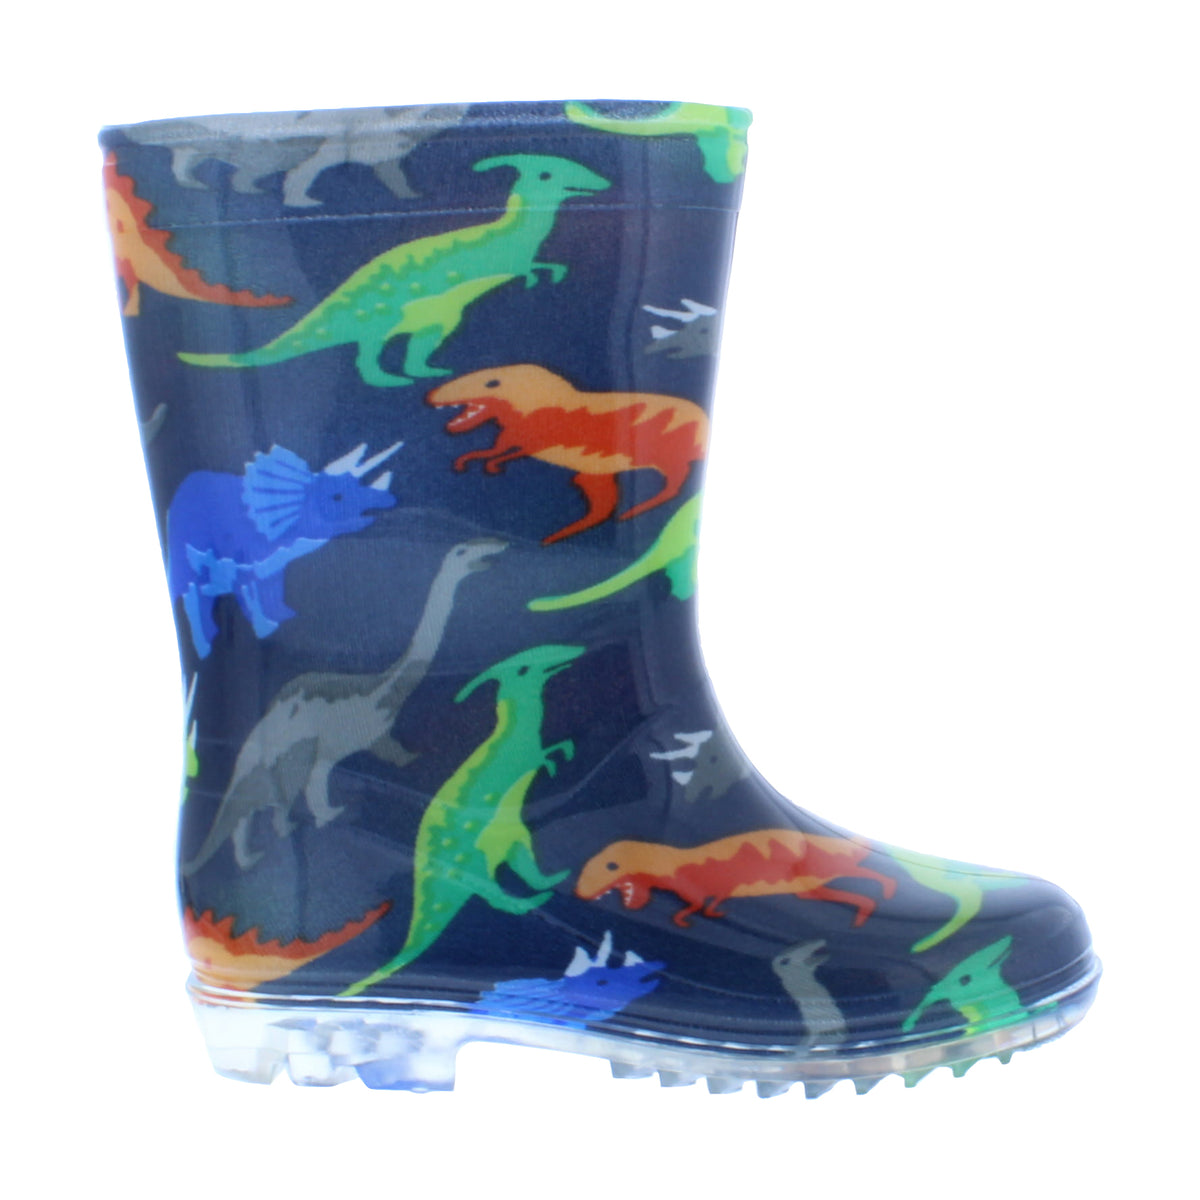 Botas de agua de color azul con estampado de dinosaurios